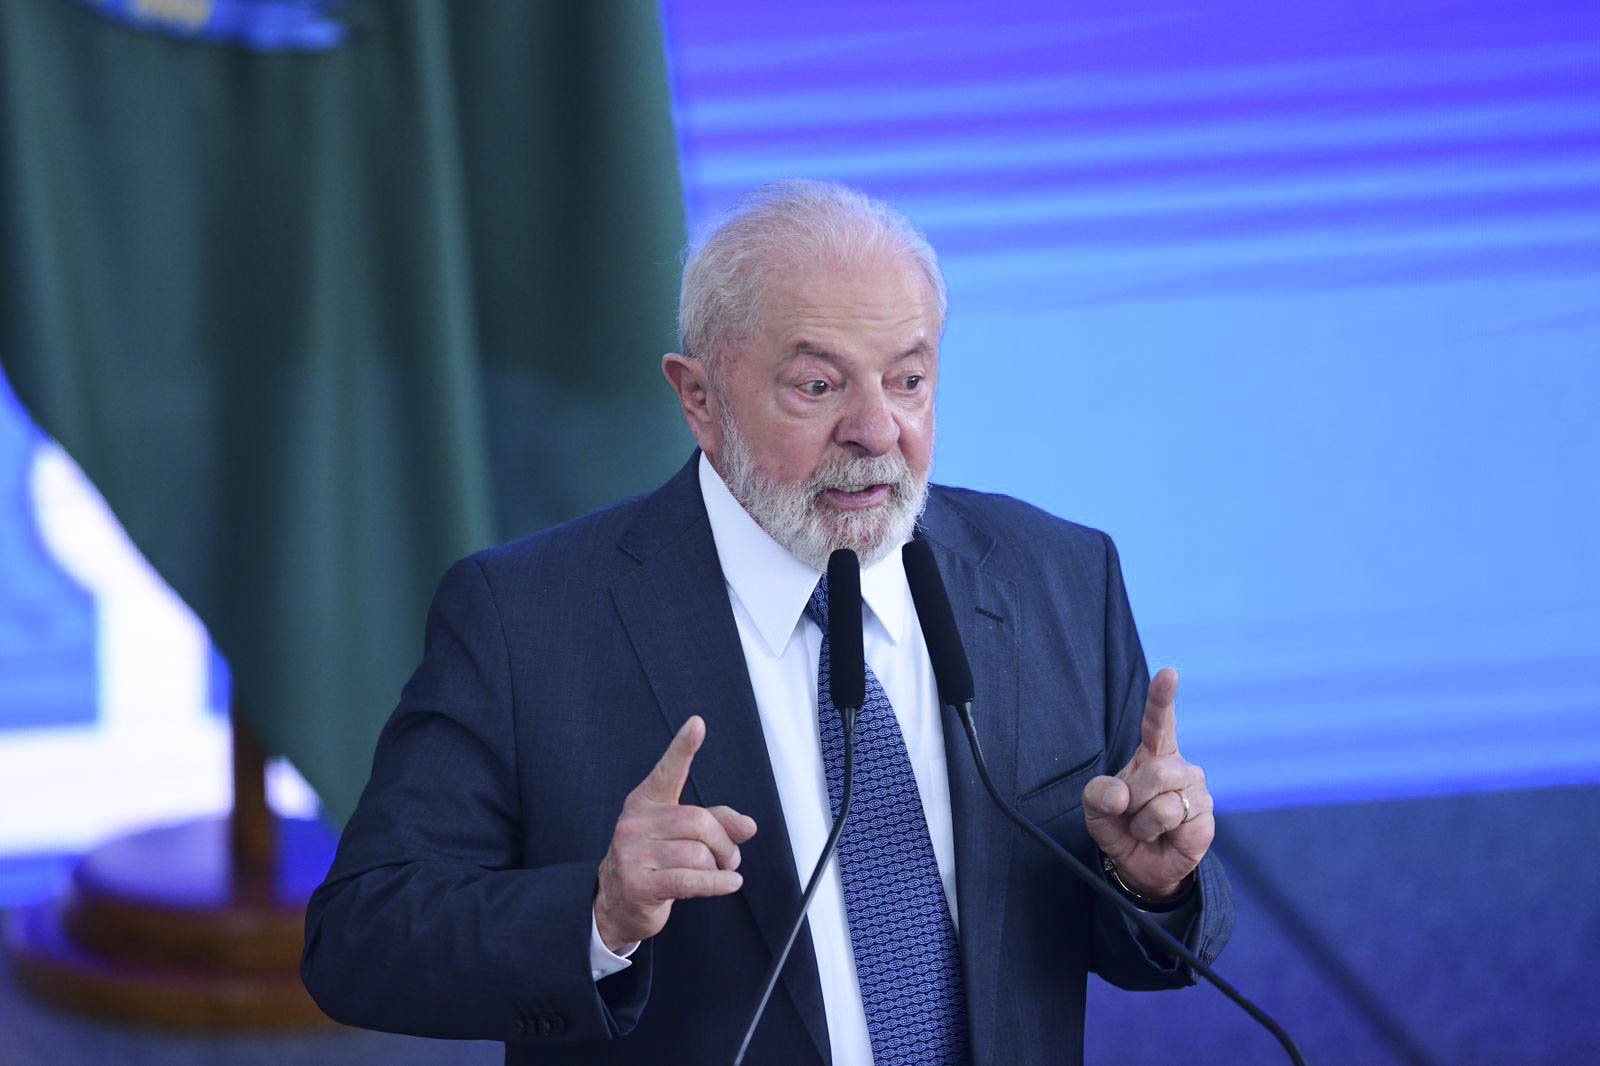 O presidente da República, Luiz Inácio Lula da Silva, durante discurso em evento no Planalto - Metrópoles